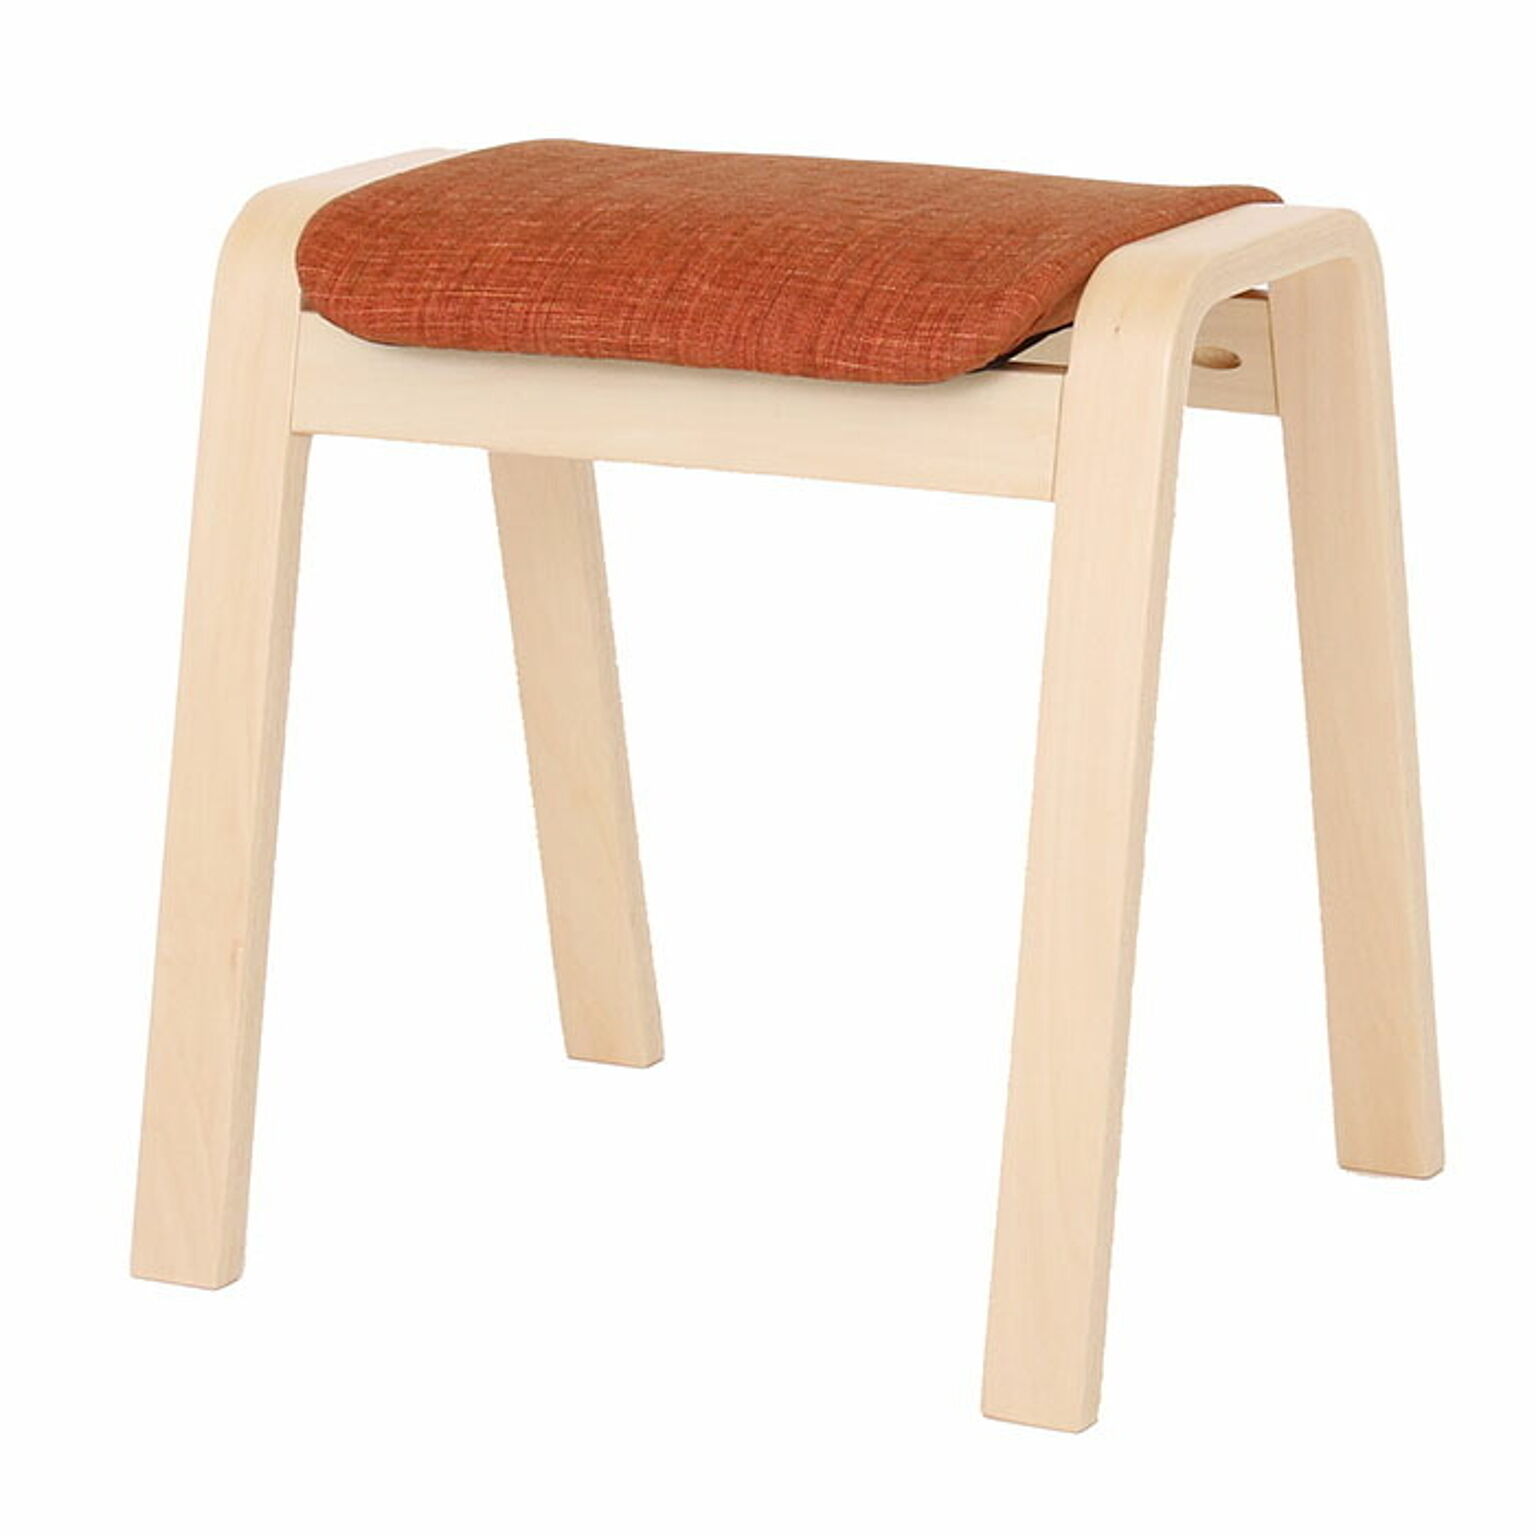 1年保証 スツール 4脚セット 木製 おしゃれ 北欧 椅子 チェア 収納 積み重ね可能 スタッキング 布 来客用 Paseli パセリ